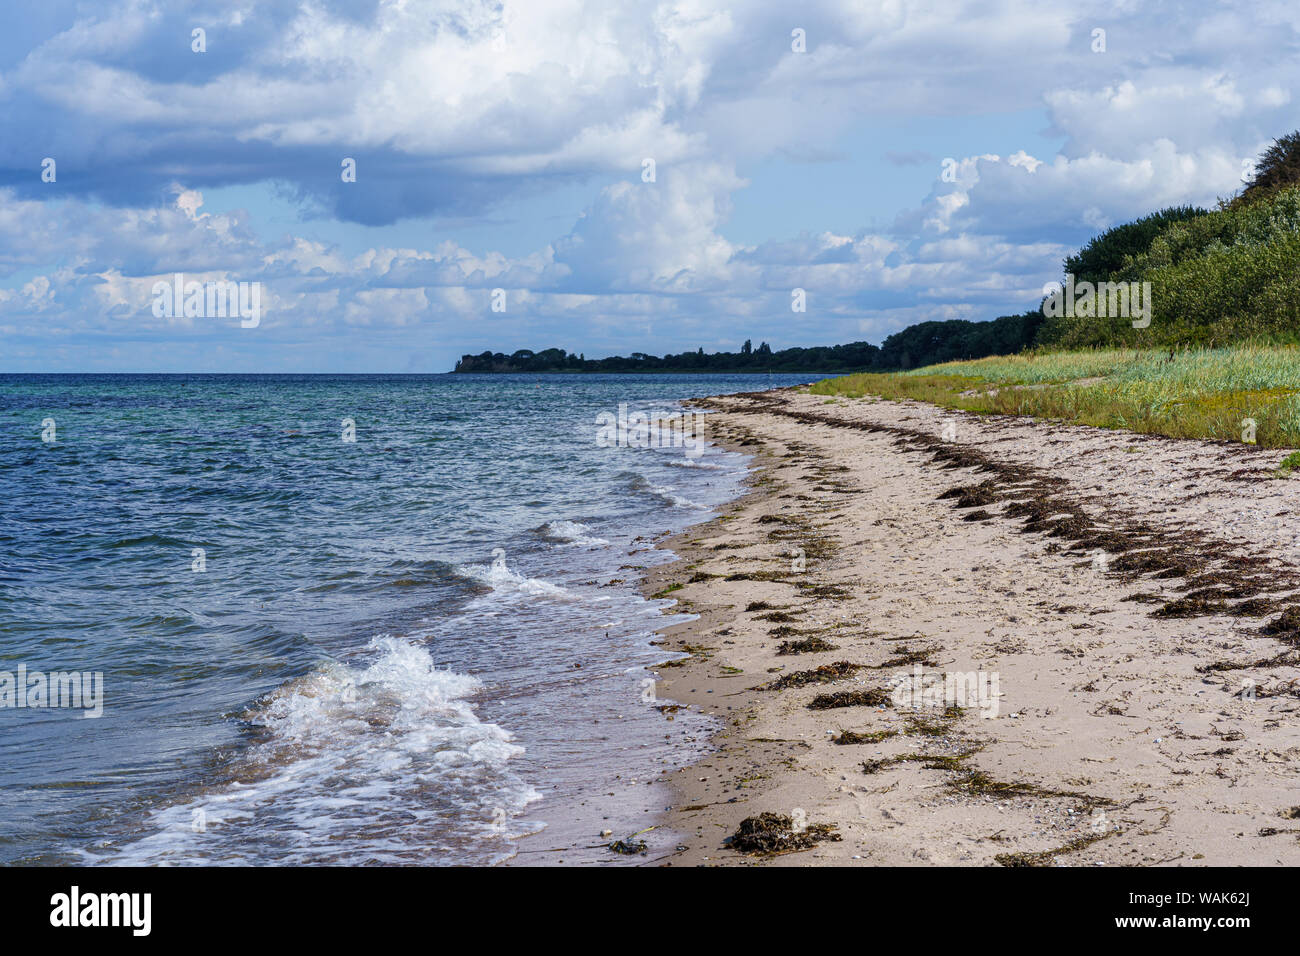 Plage de sable avec des vagues sur la mer Baltique Banque D'Images